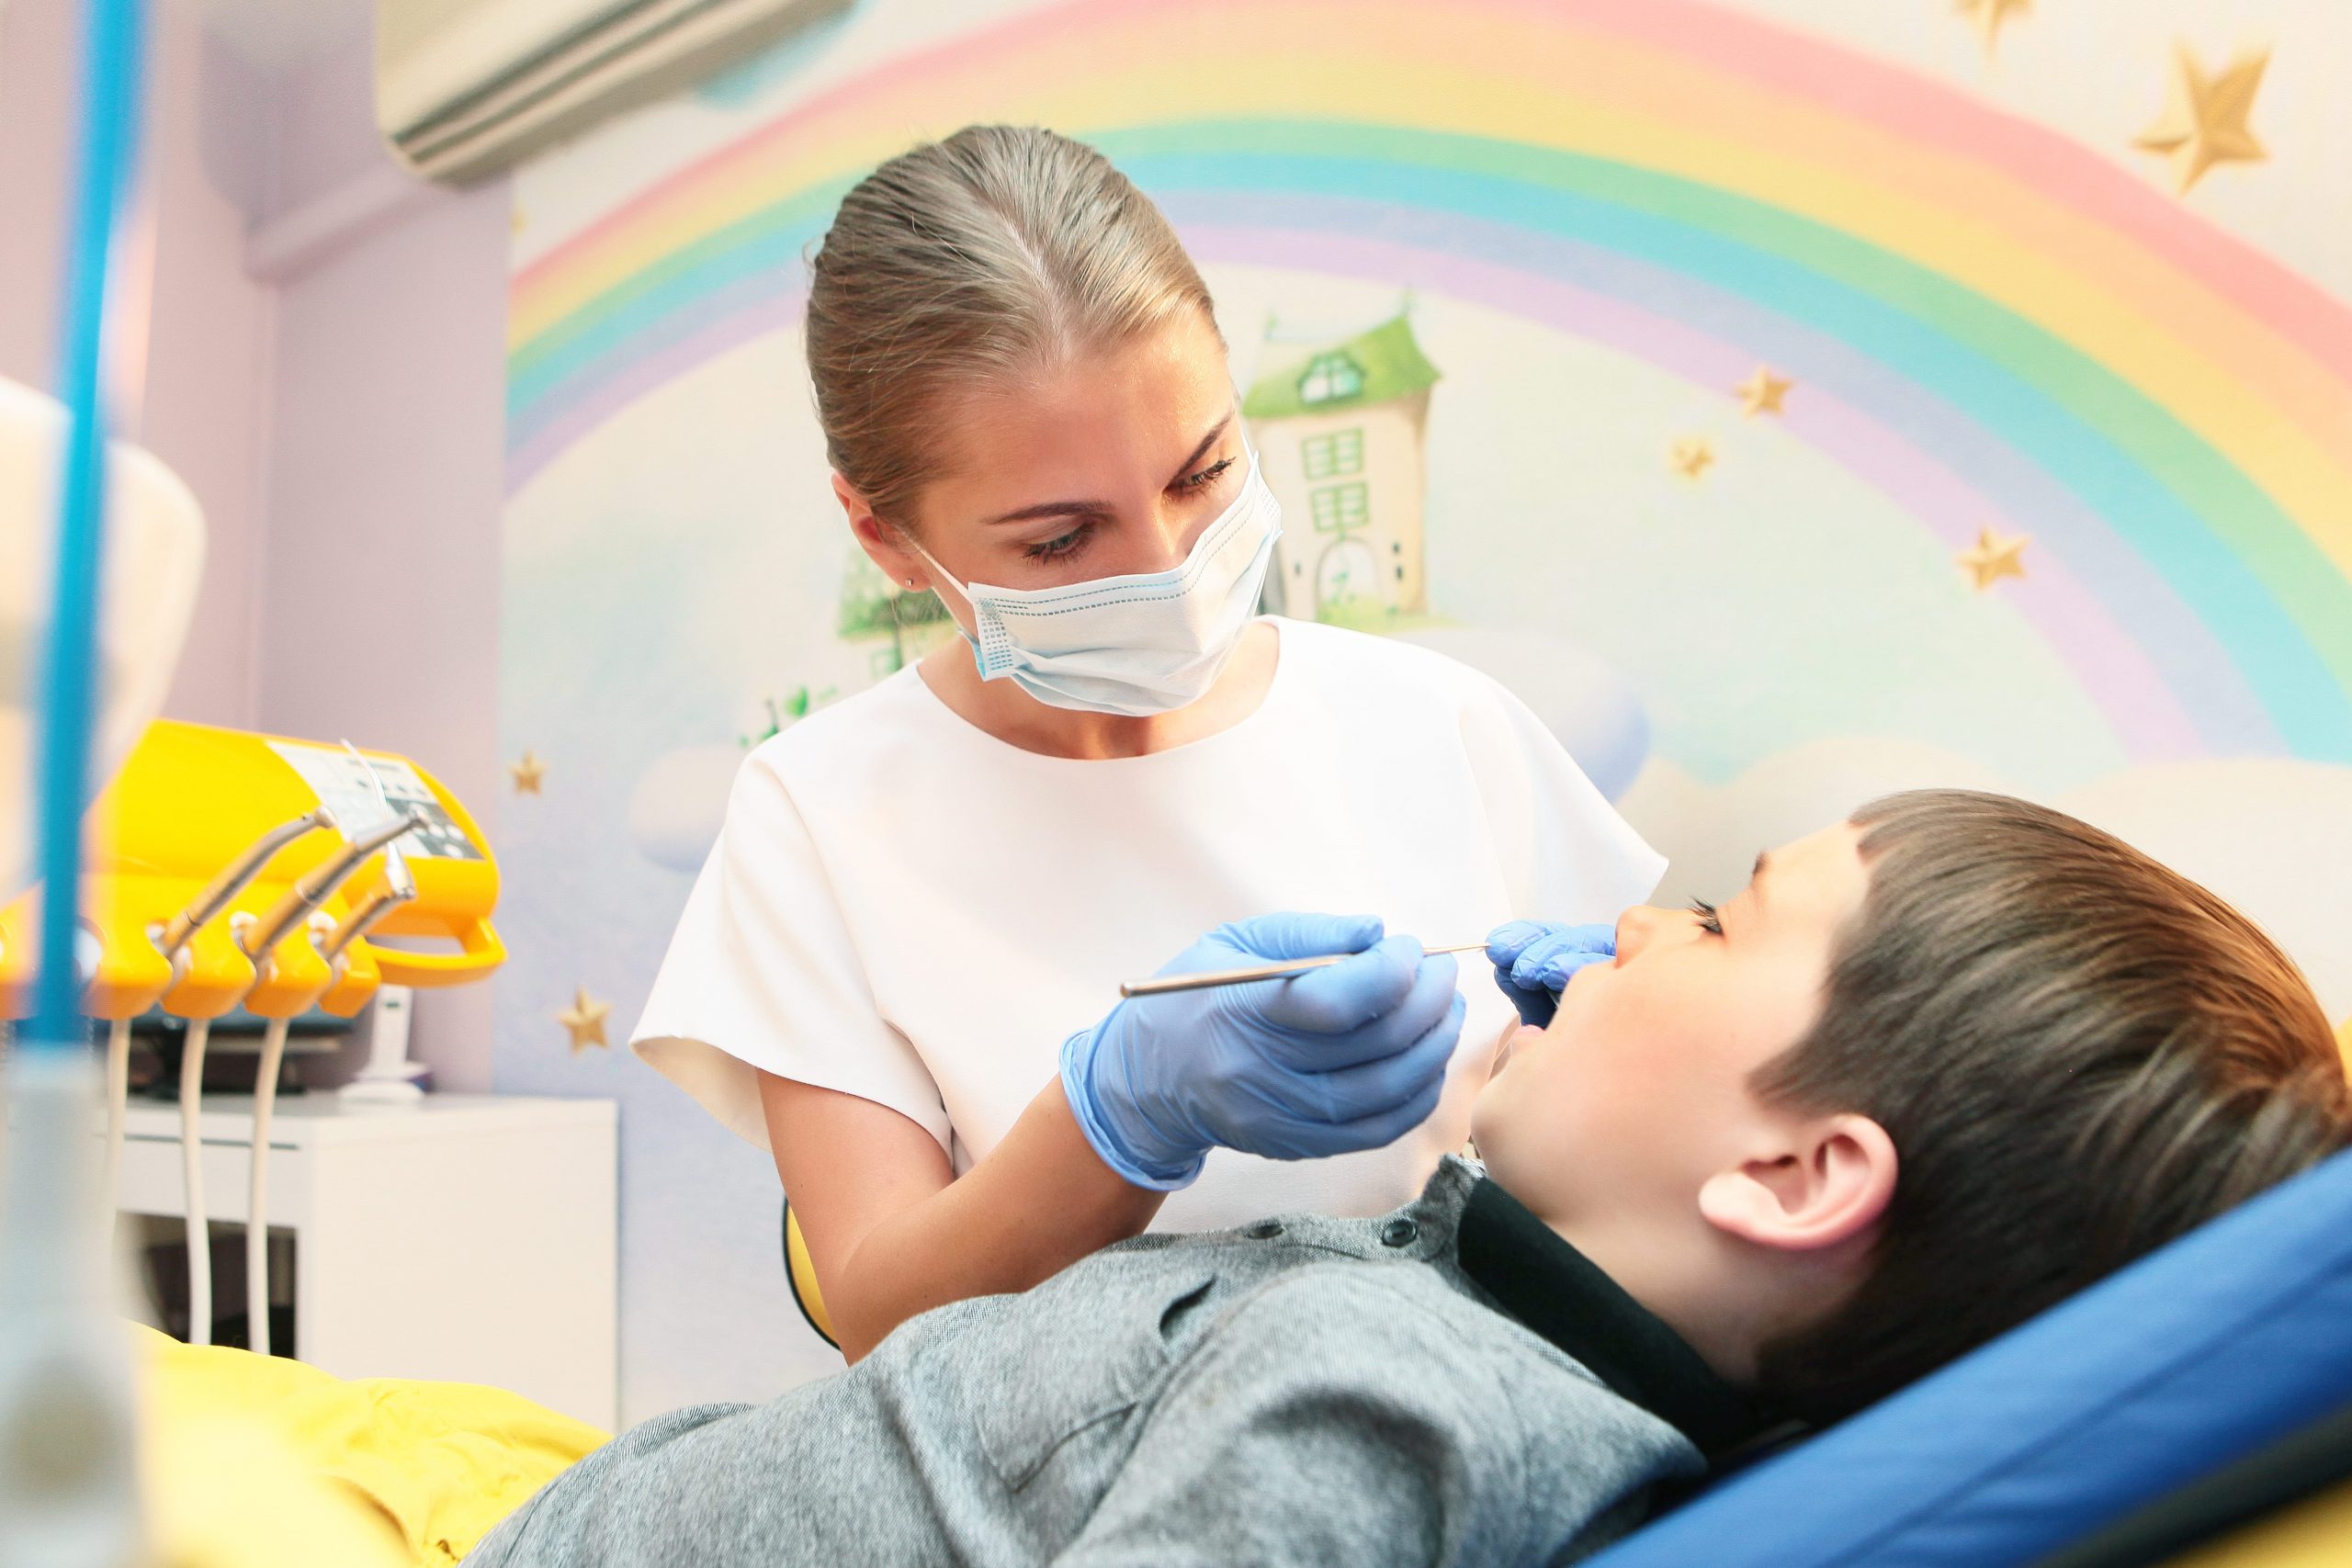 Hipodoncja a leczenie protetyczne. Co warto wiedzieć?